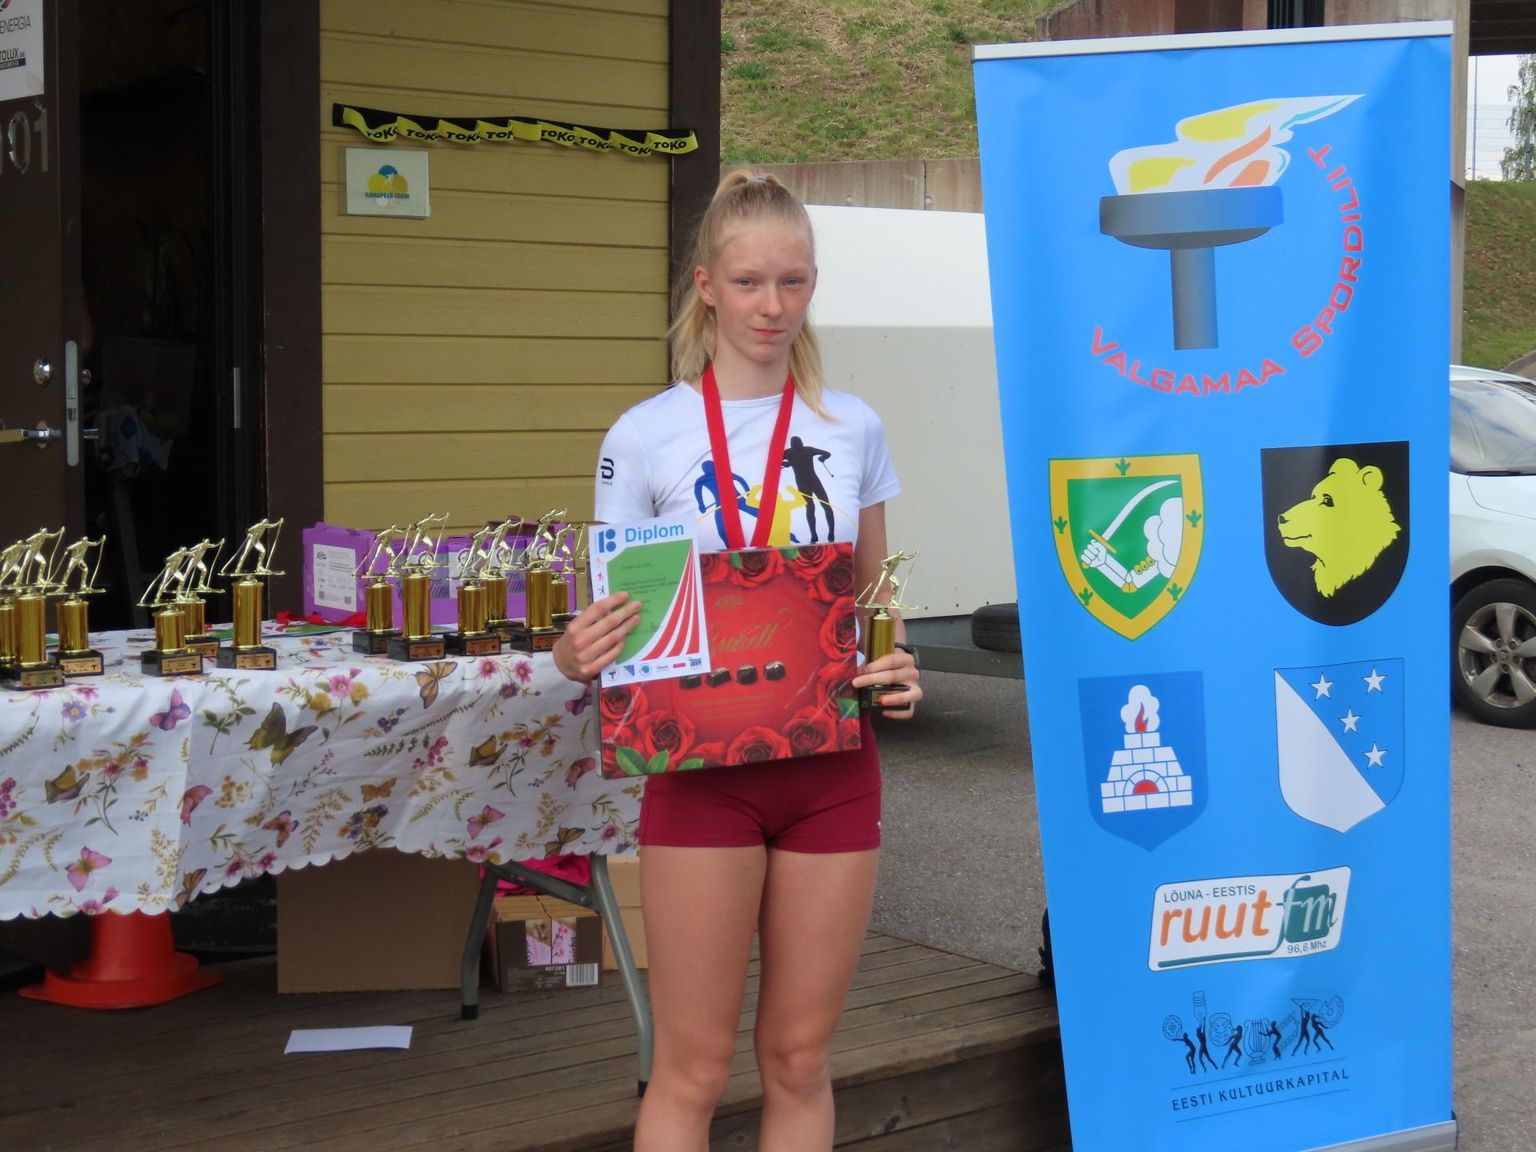 Valgamaa kõige sportlikumaks perekonnaks kuulutatud Unnide perre kuuluv Anni Lii Unn võitis tänavu muu hulgas Valgamaa suusasarja N16 vanuseklassis ja maakonna meistritiitli.